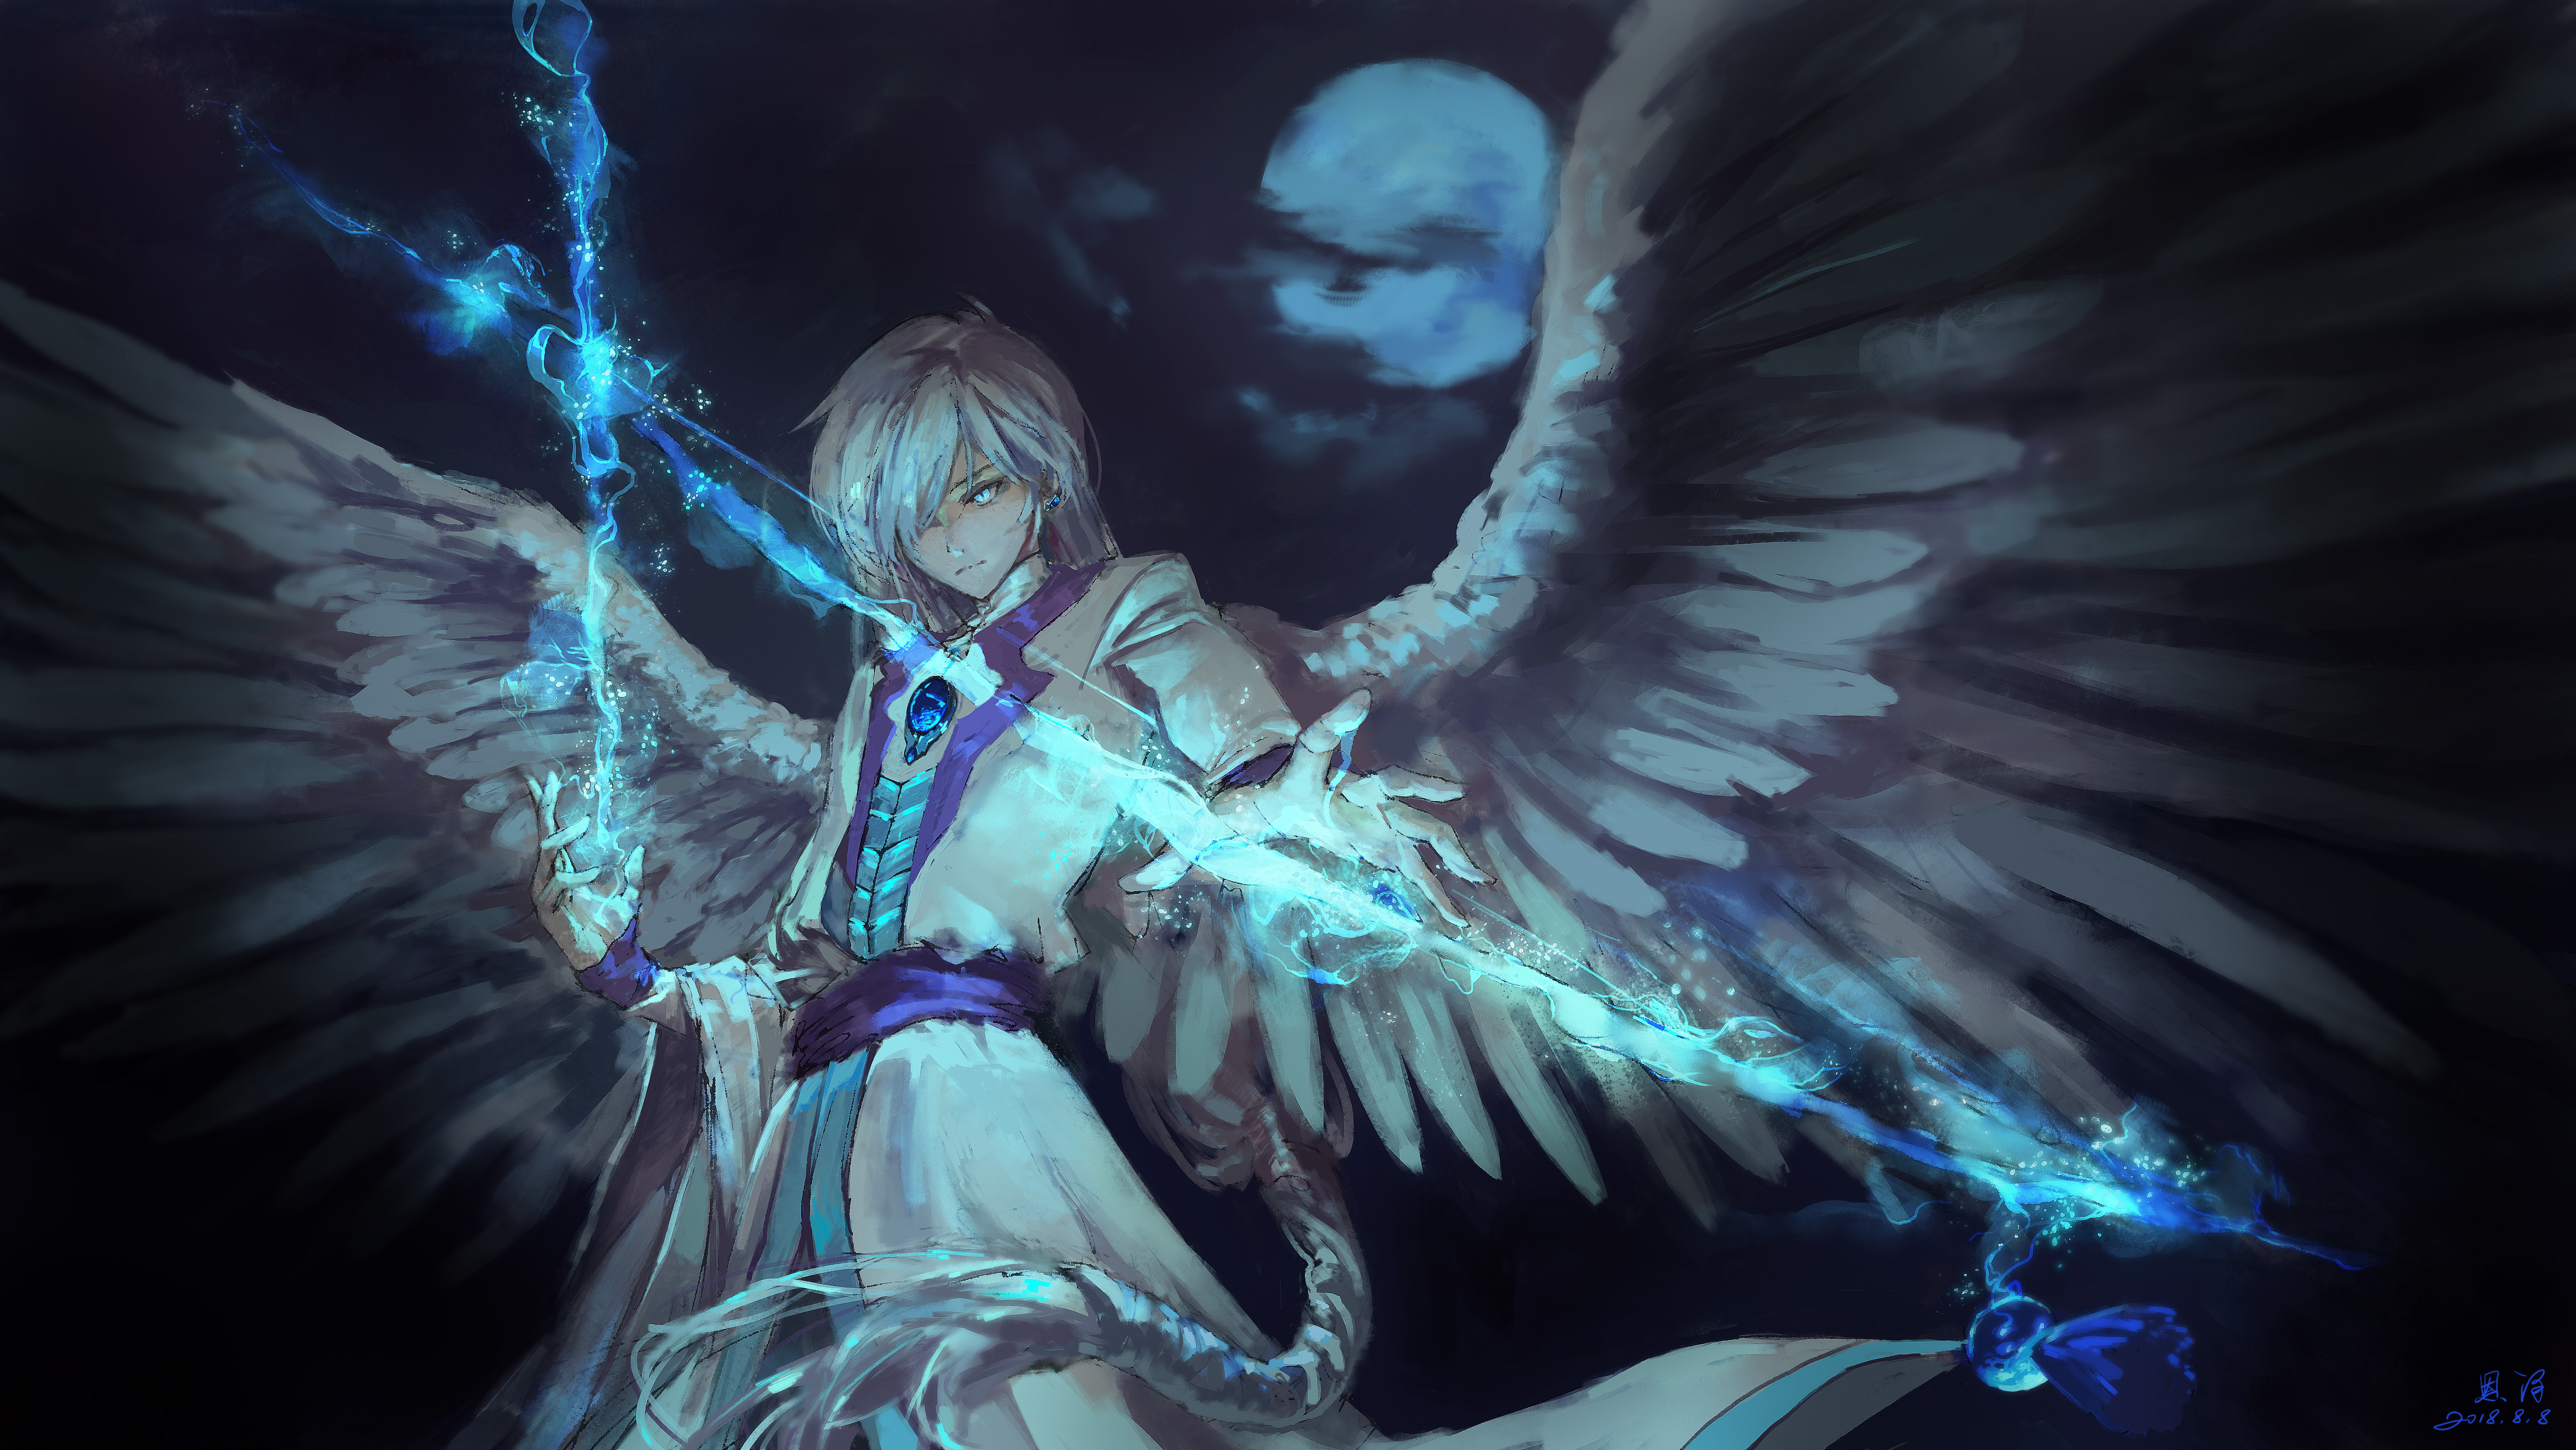 Anime Angel Boy With Magical Arrow, HD Anime, 4k ...